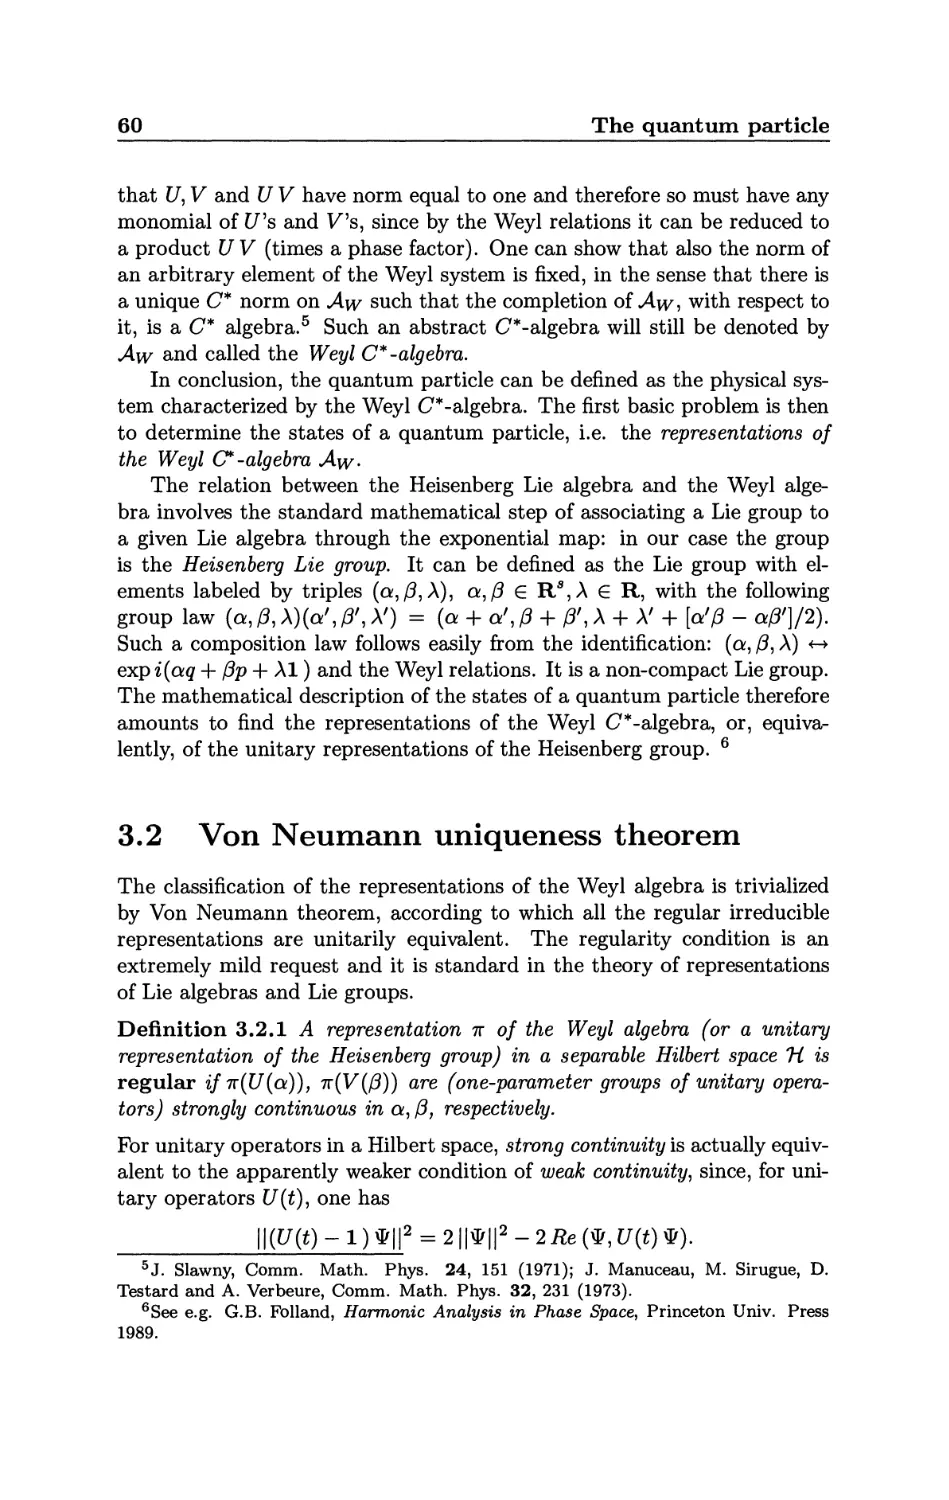 3.2 Von Neumann uniqueness theorem